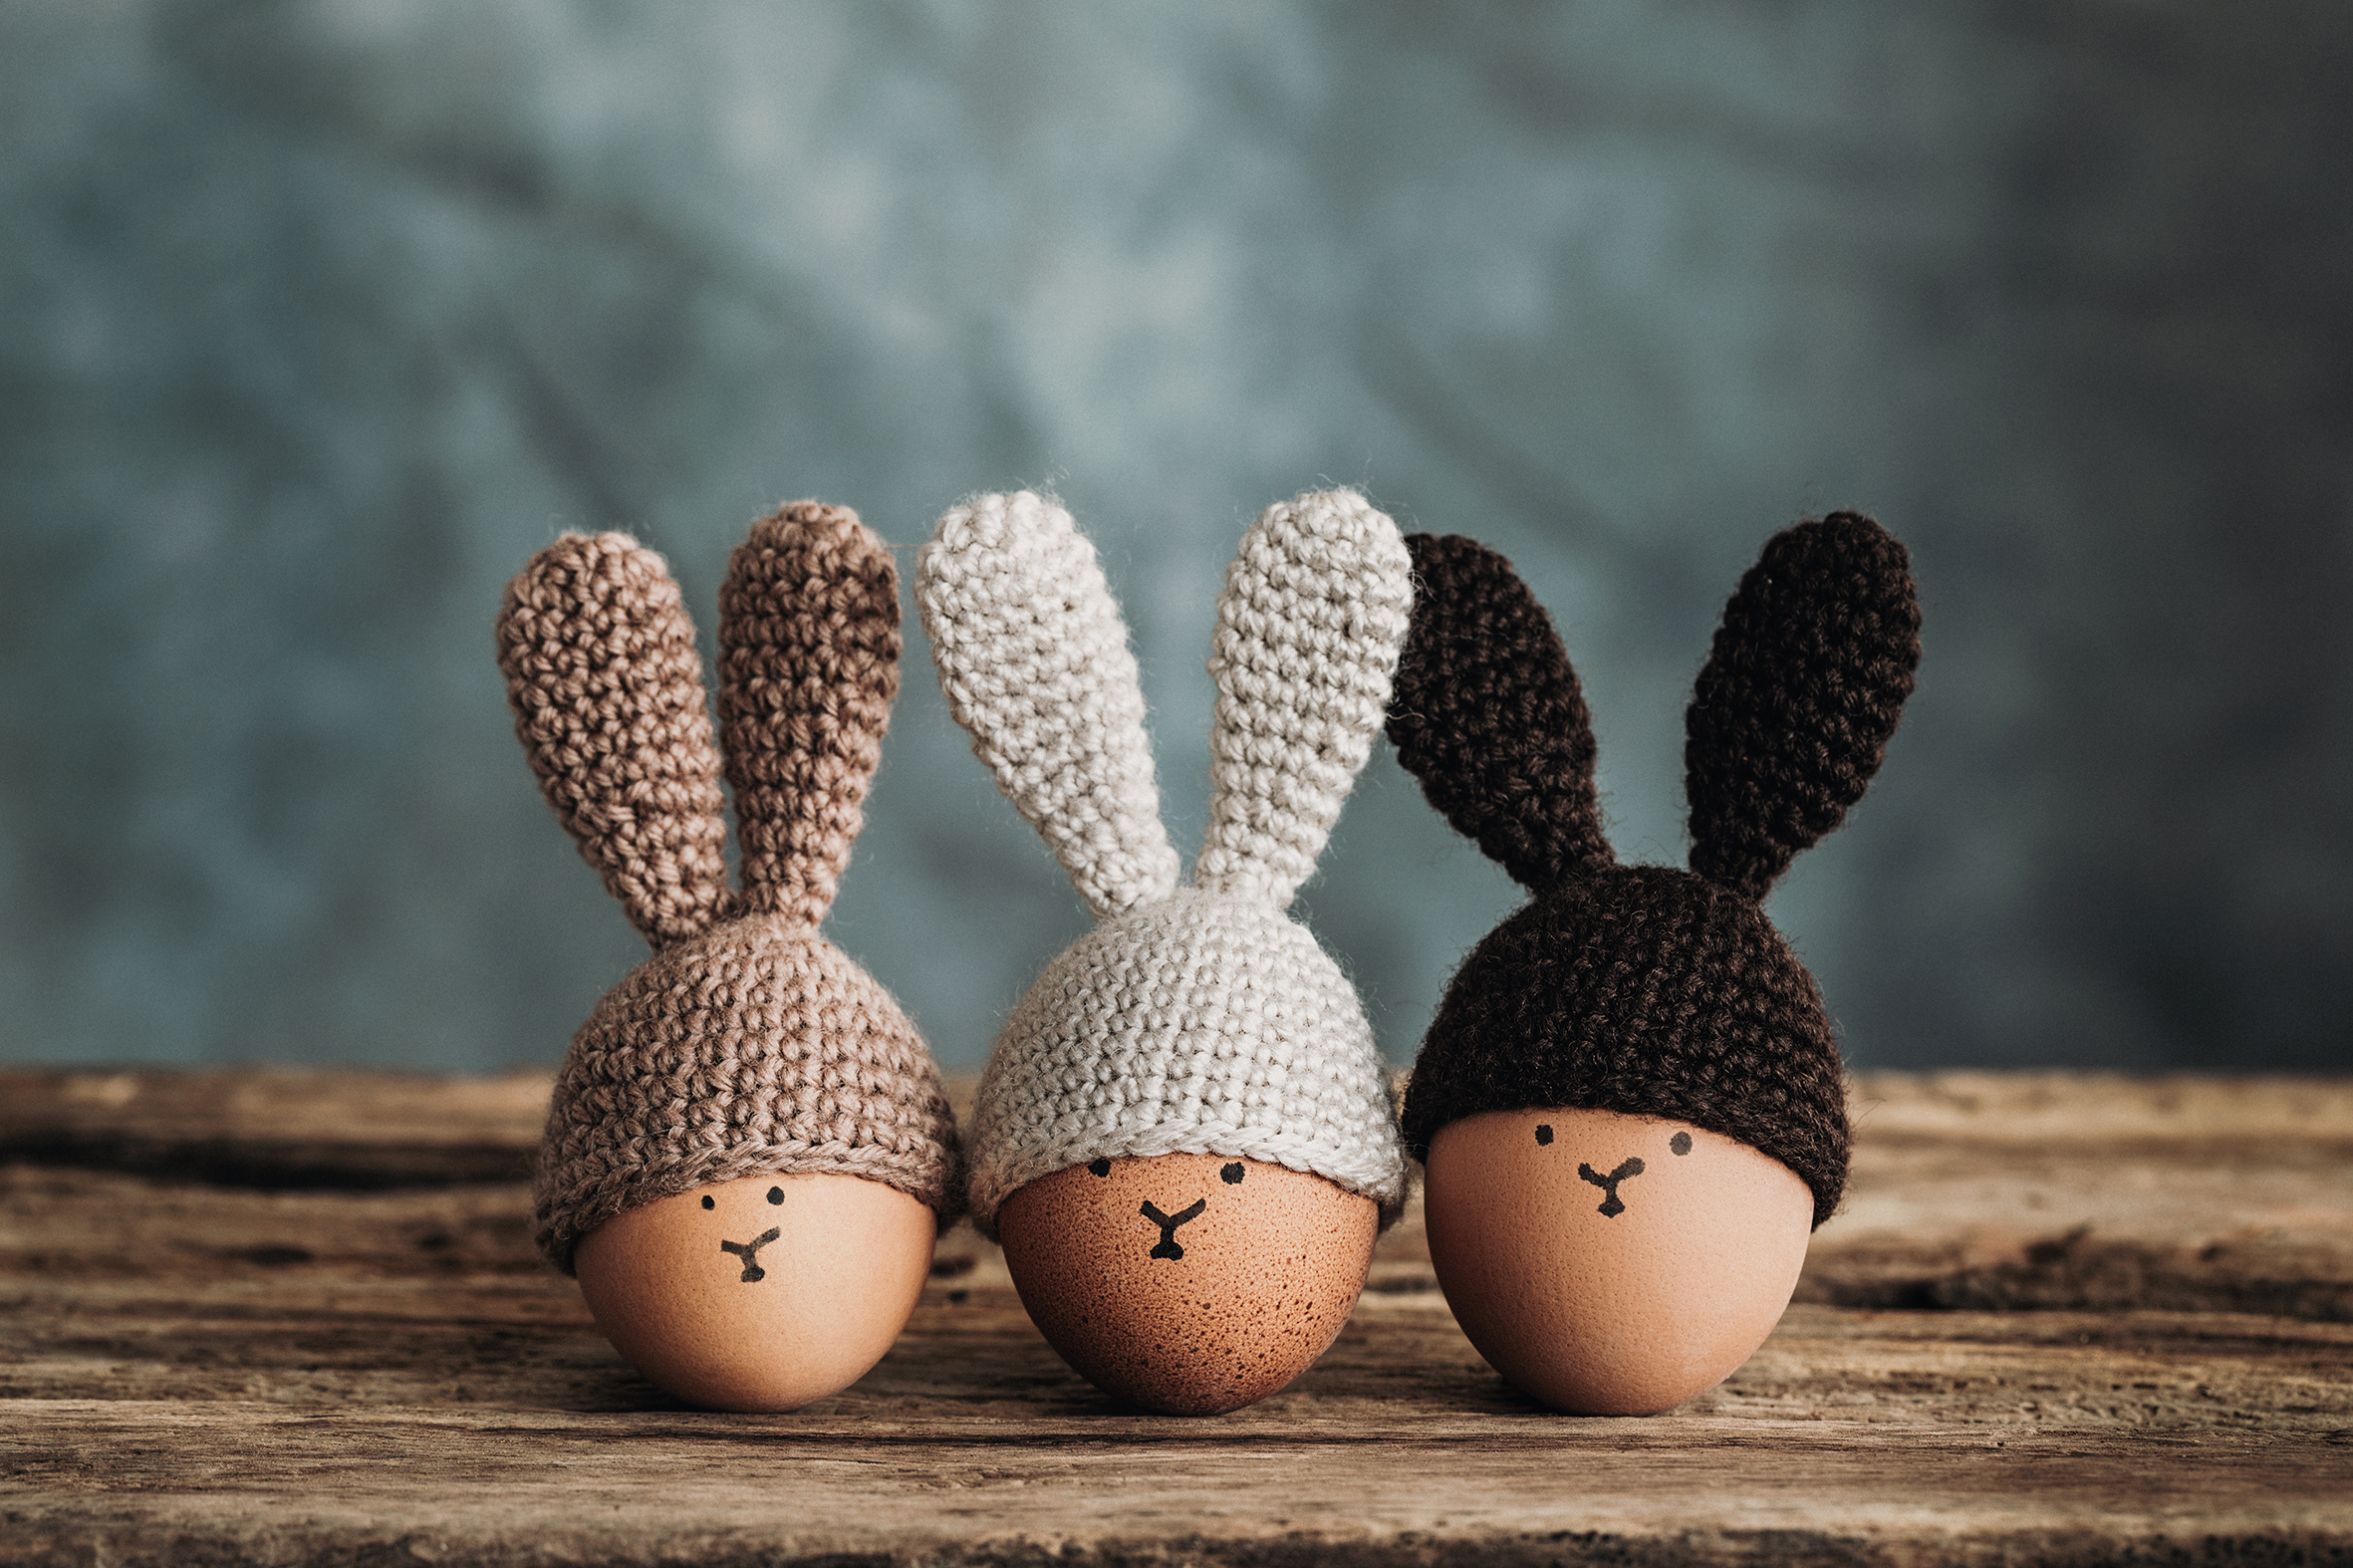 Wenn Sie stricken oder häkeln können oder es noch lernen wollen, ist auch das eine sehr süße Idee: Eierwärmer in Hasenohren-Optik! Vielleicht noch mit Permanentmarker ein kleines Hasengesicht aufmalen und die gekochten Eier sind das Highlight am Oster-Frühstückstisch.